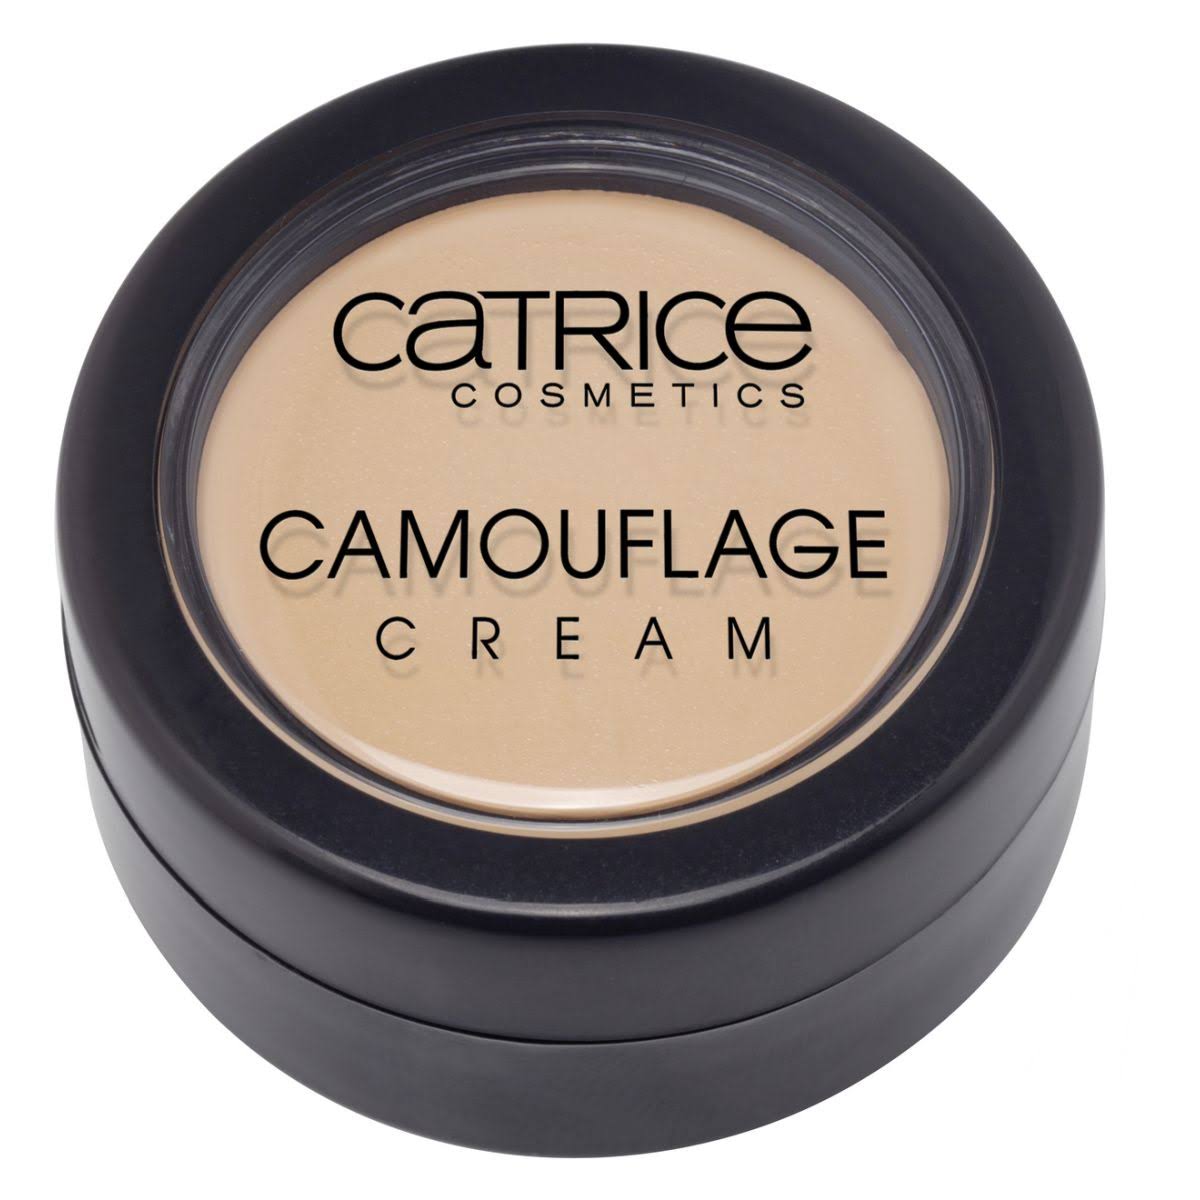 Catrice Camouflage Cream 015 Fair 3g